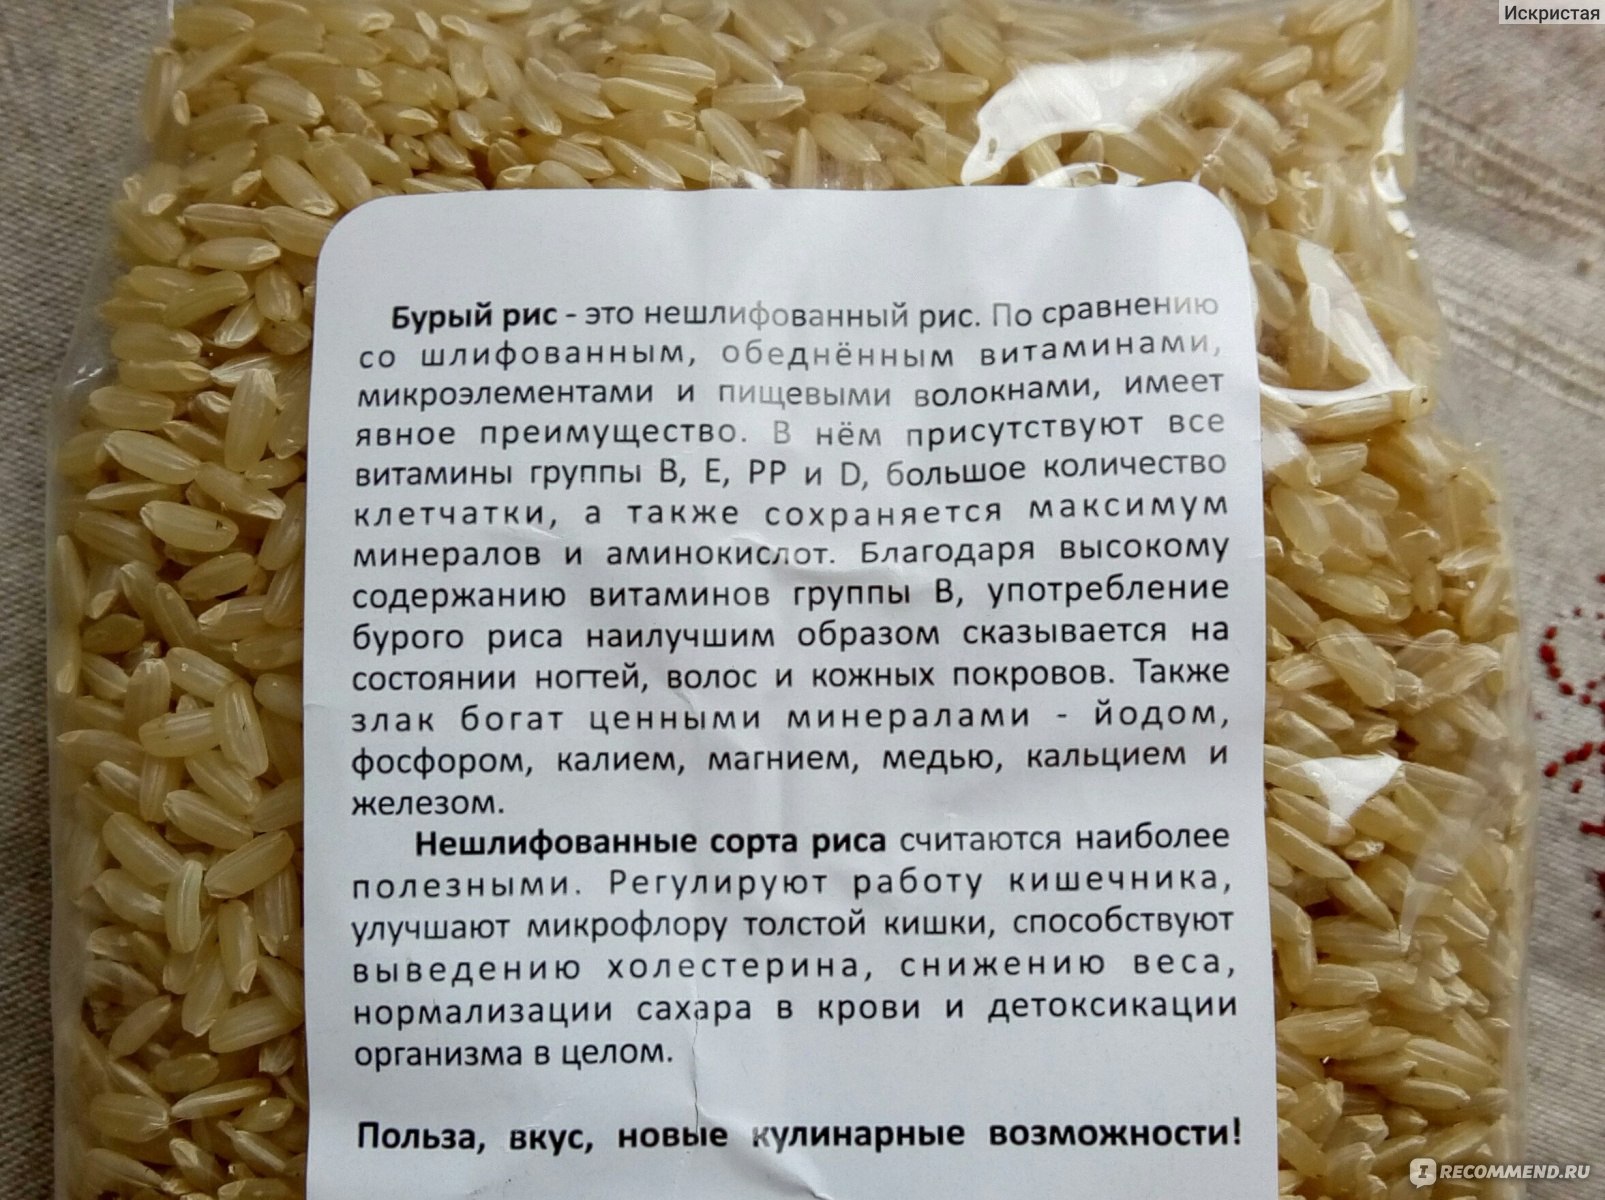 Во сколько раз увеличивается объем риса. Рис бурый нешлифованный. Белый нешлифованный рис. Рис разваривается. Рис нешлифованный польза.